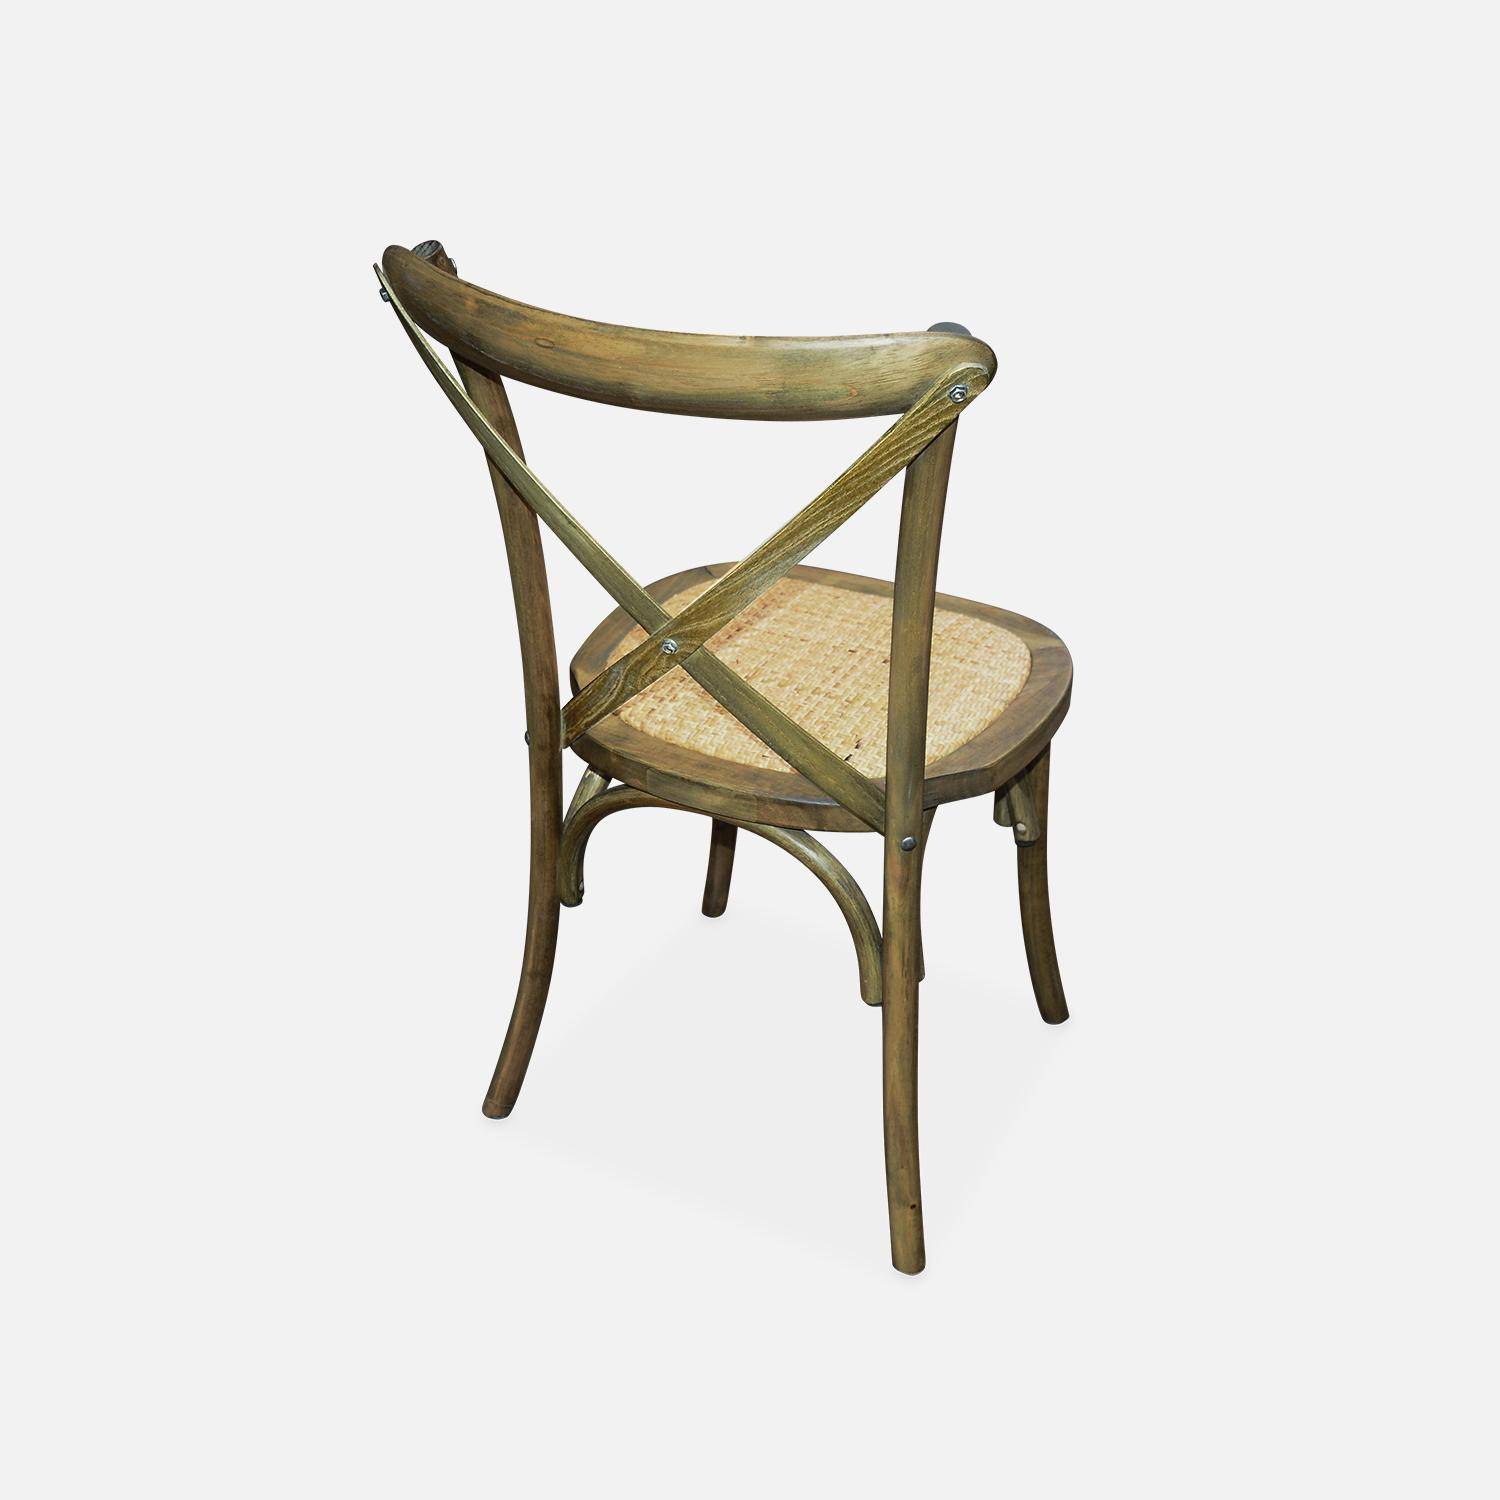 Lot de 2 chaises de bistrot en bois d'hévéa marron vieilli, vintage, assise en rotin, empilables Photo3